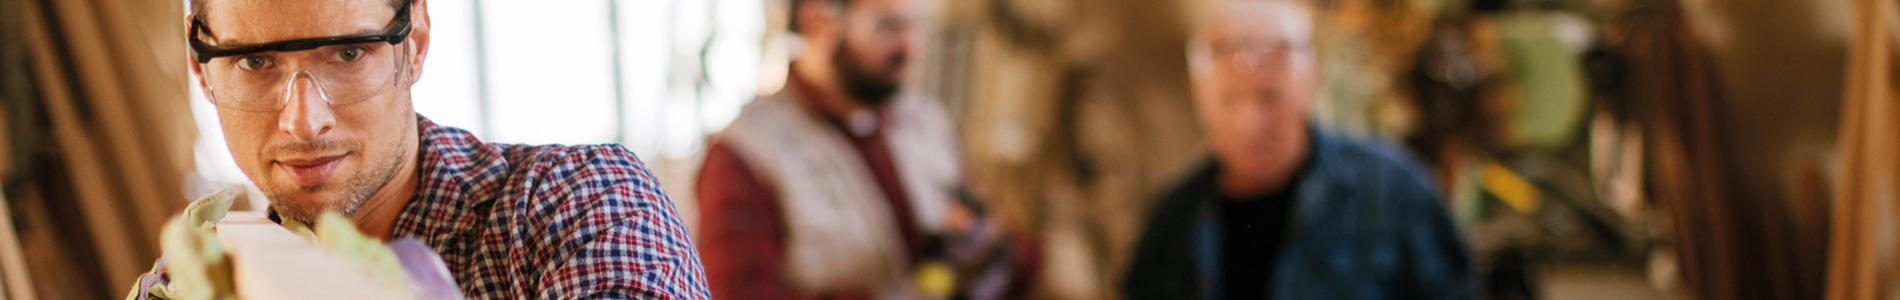 Auf dem Bild ist ein Mann mit Schutzbrille und Arbeitsschutzhandschuhen in einer Werkstatt abgebildet, der ein Stück Holz in der Hand hält und dieses hinsichtlich seiner Beschaffenheit prüft. Im Hintergrund sind verschwommen zwei weitere Männer im Gespräch erkennbar.